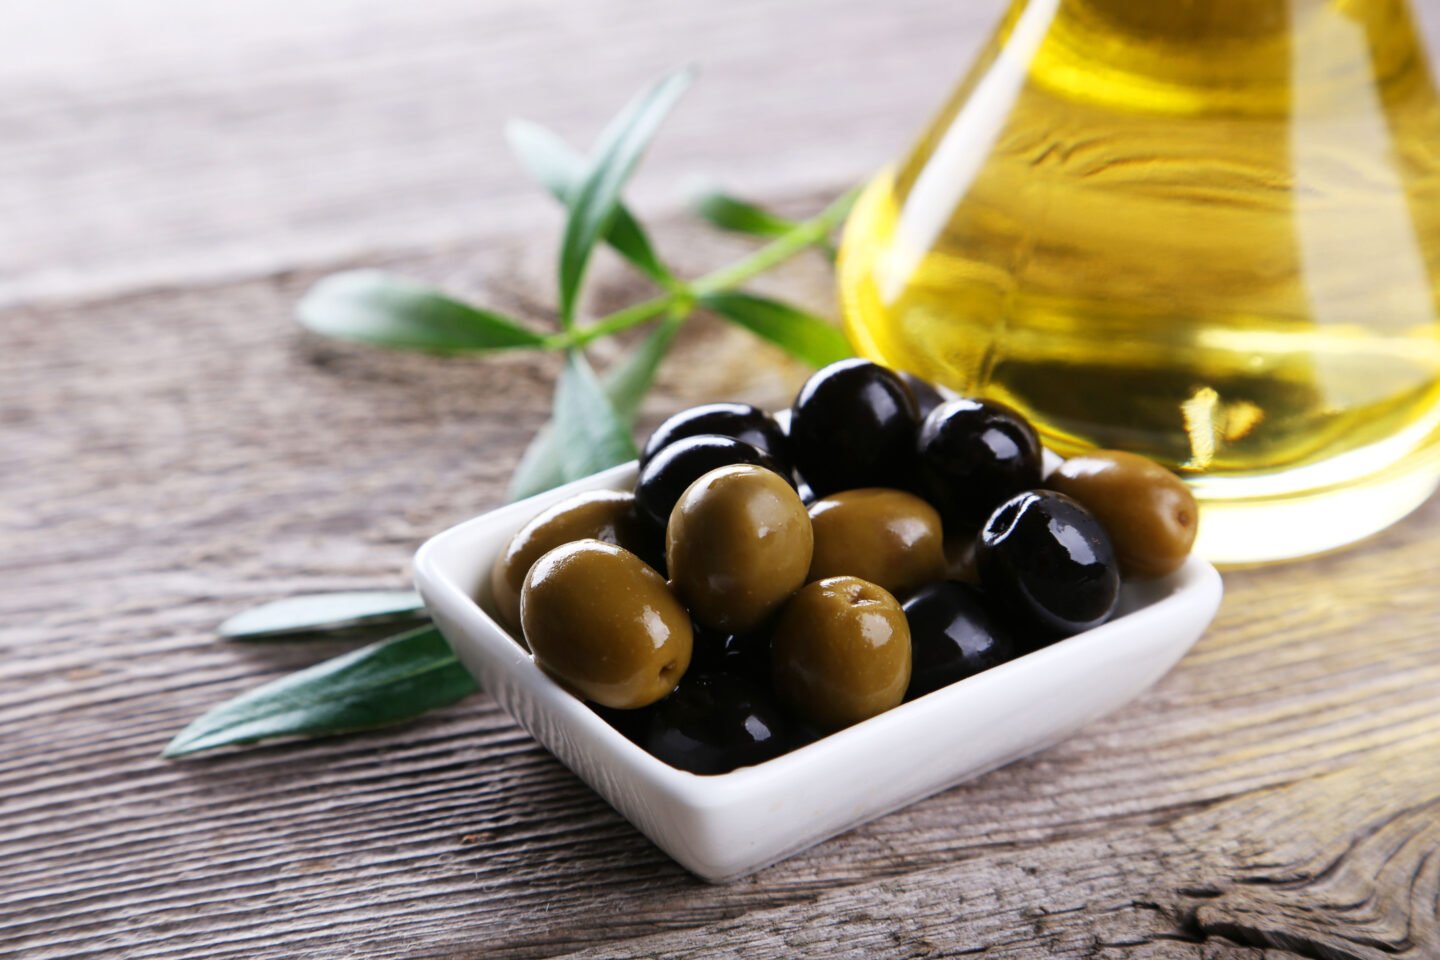 green black olives with bottle of olive oil